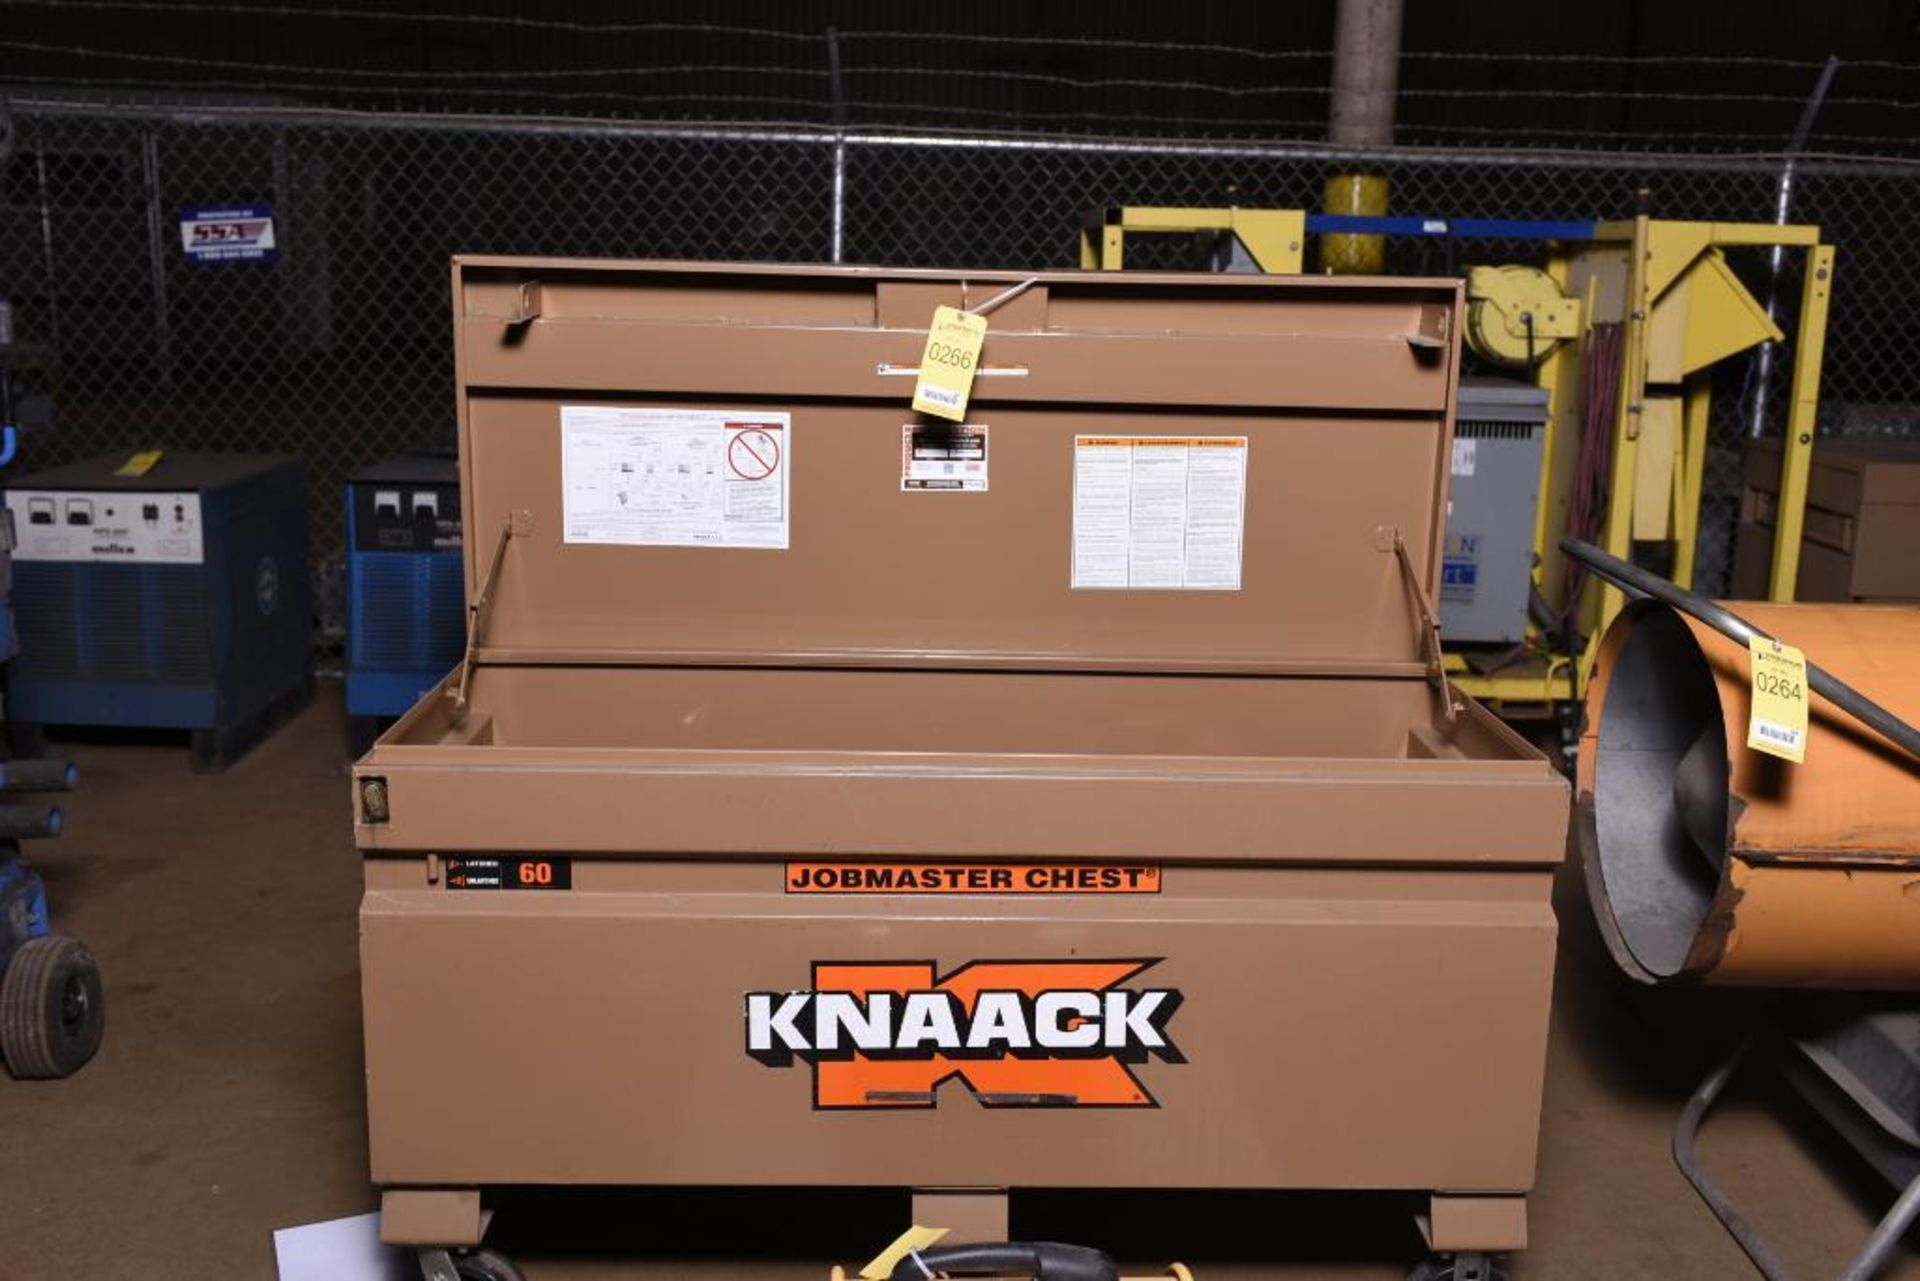 Knaack Jobmaster Chest, Model: 60